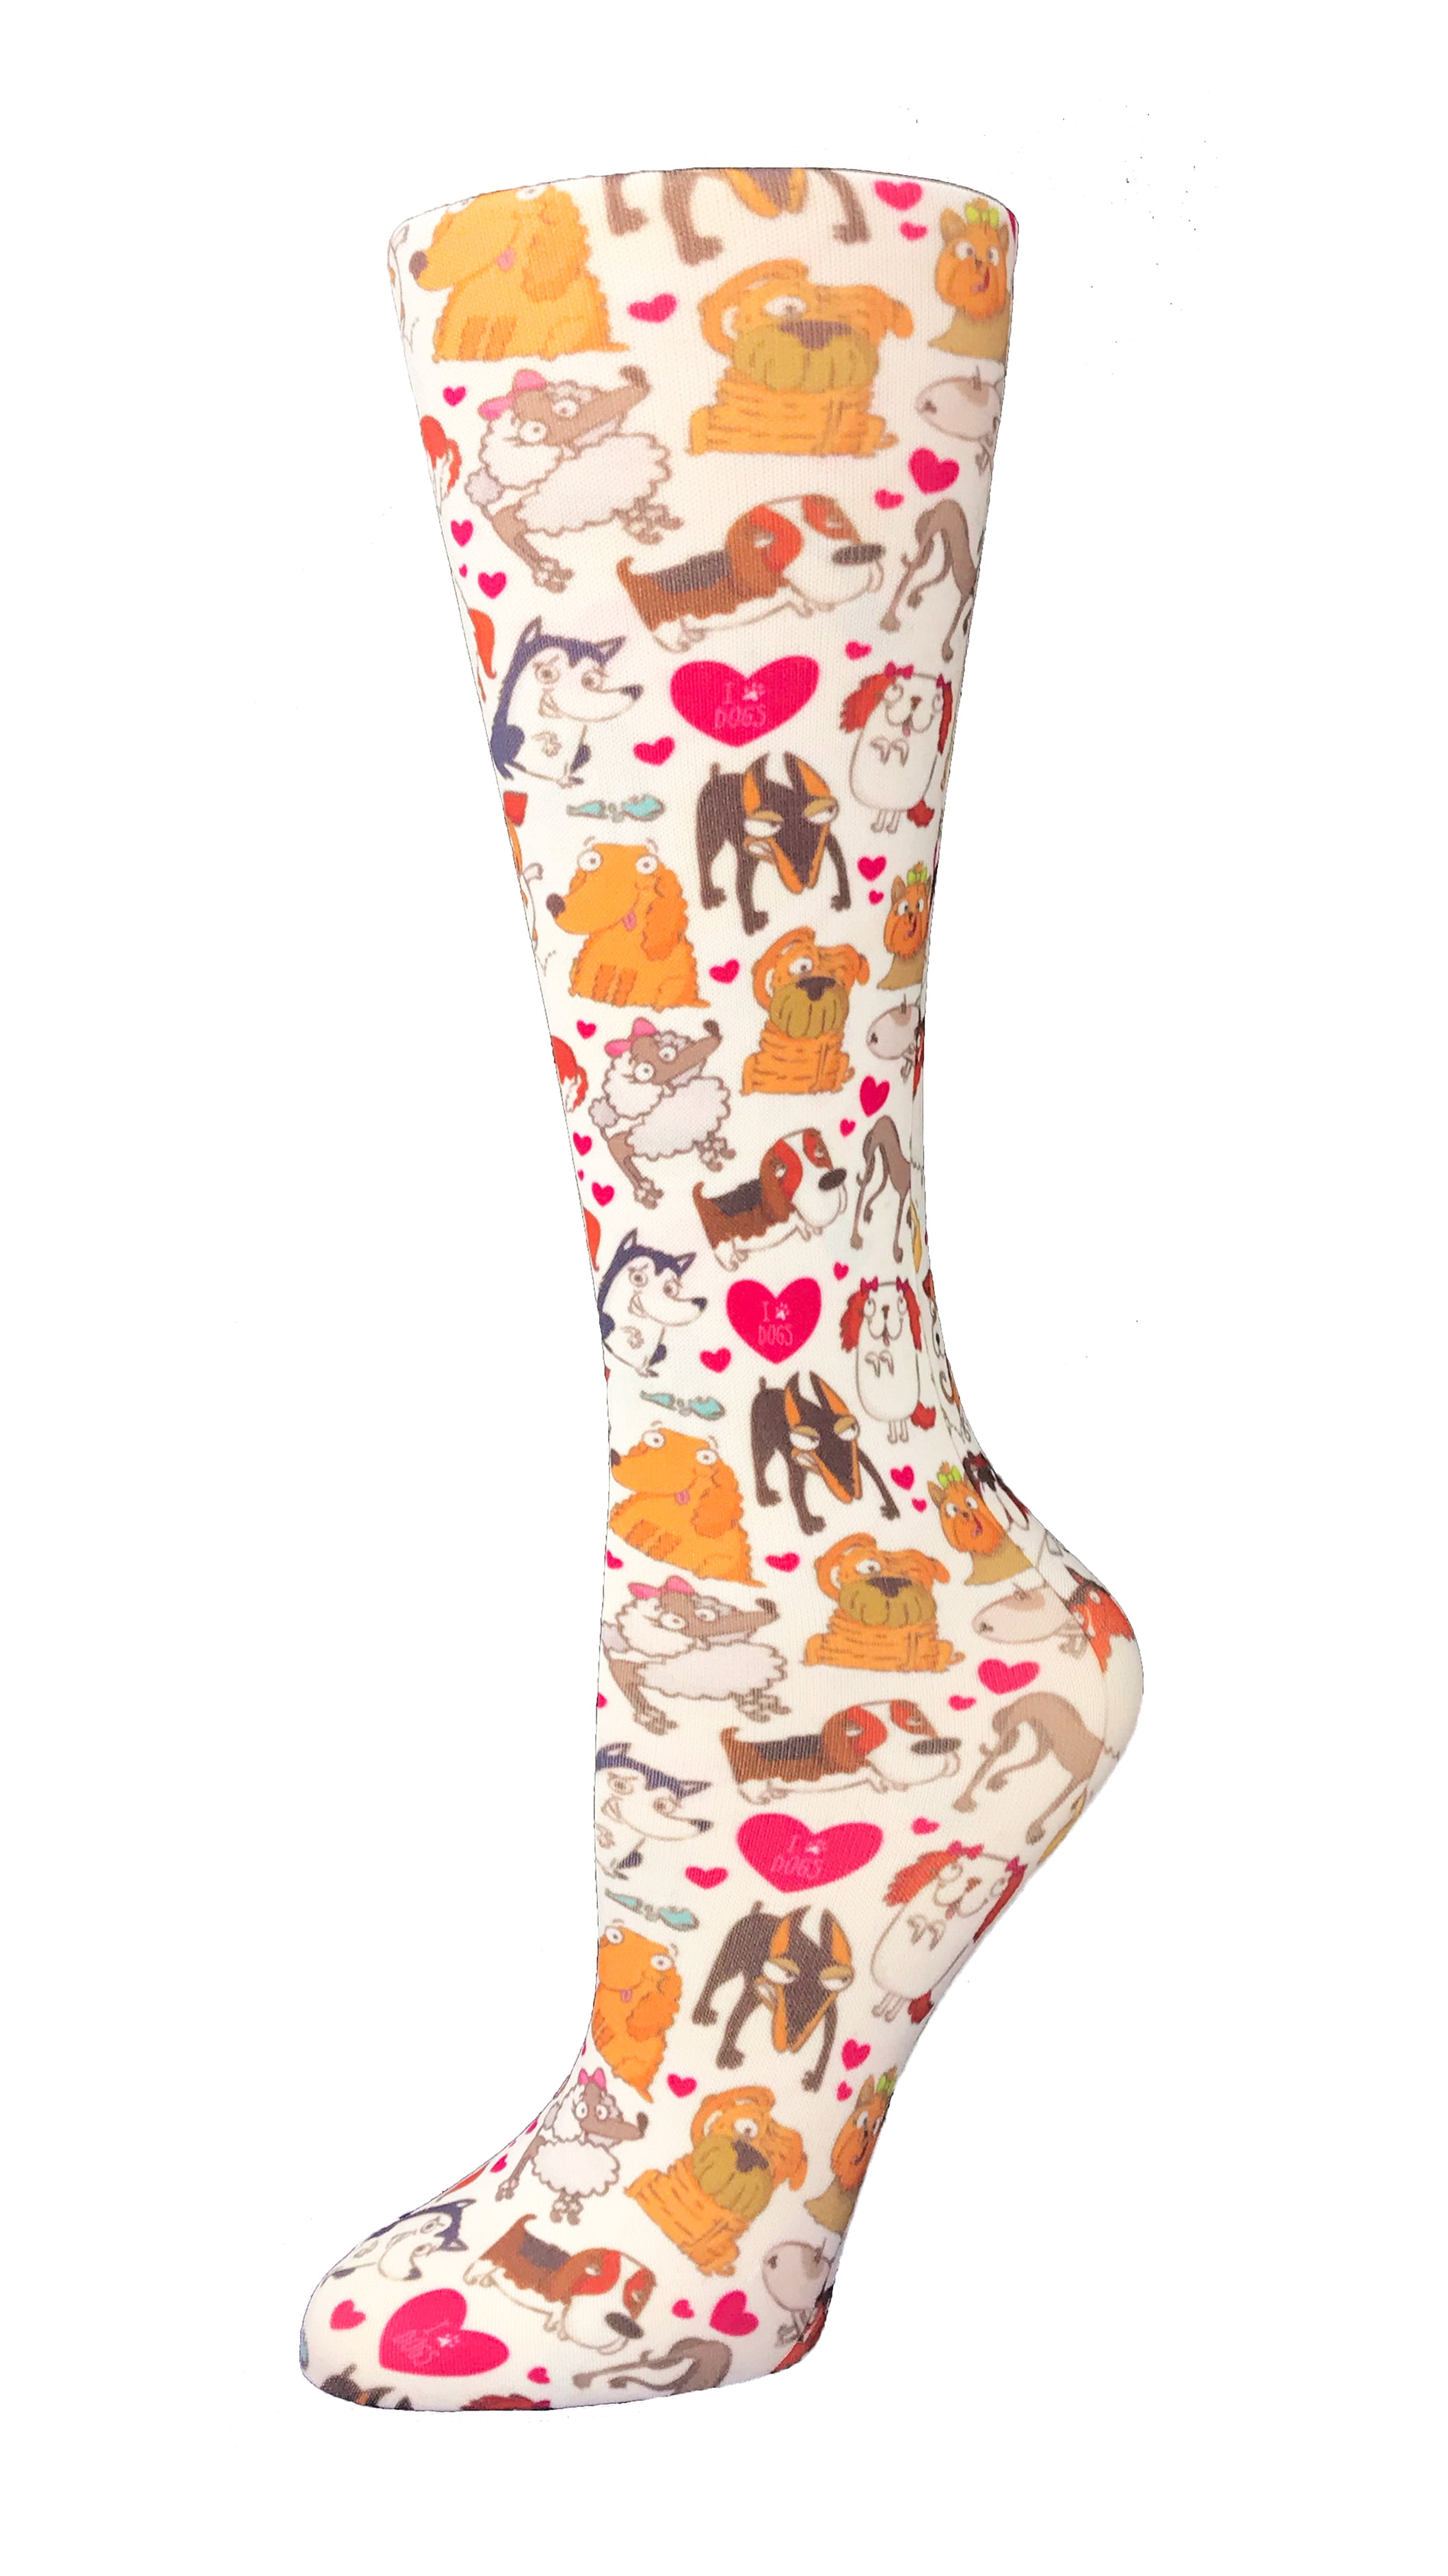 Cutieful Sheer Dog Pawty Compression Socks 8-15 MM HG  Beyond Medwear Apparel